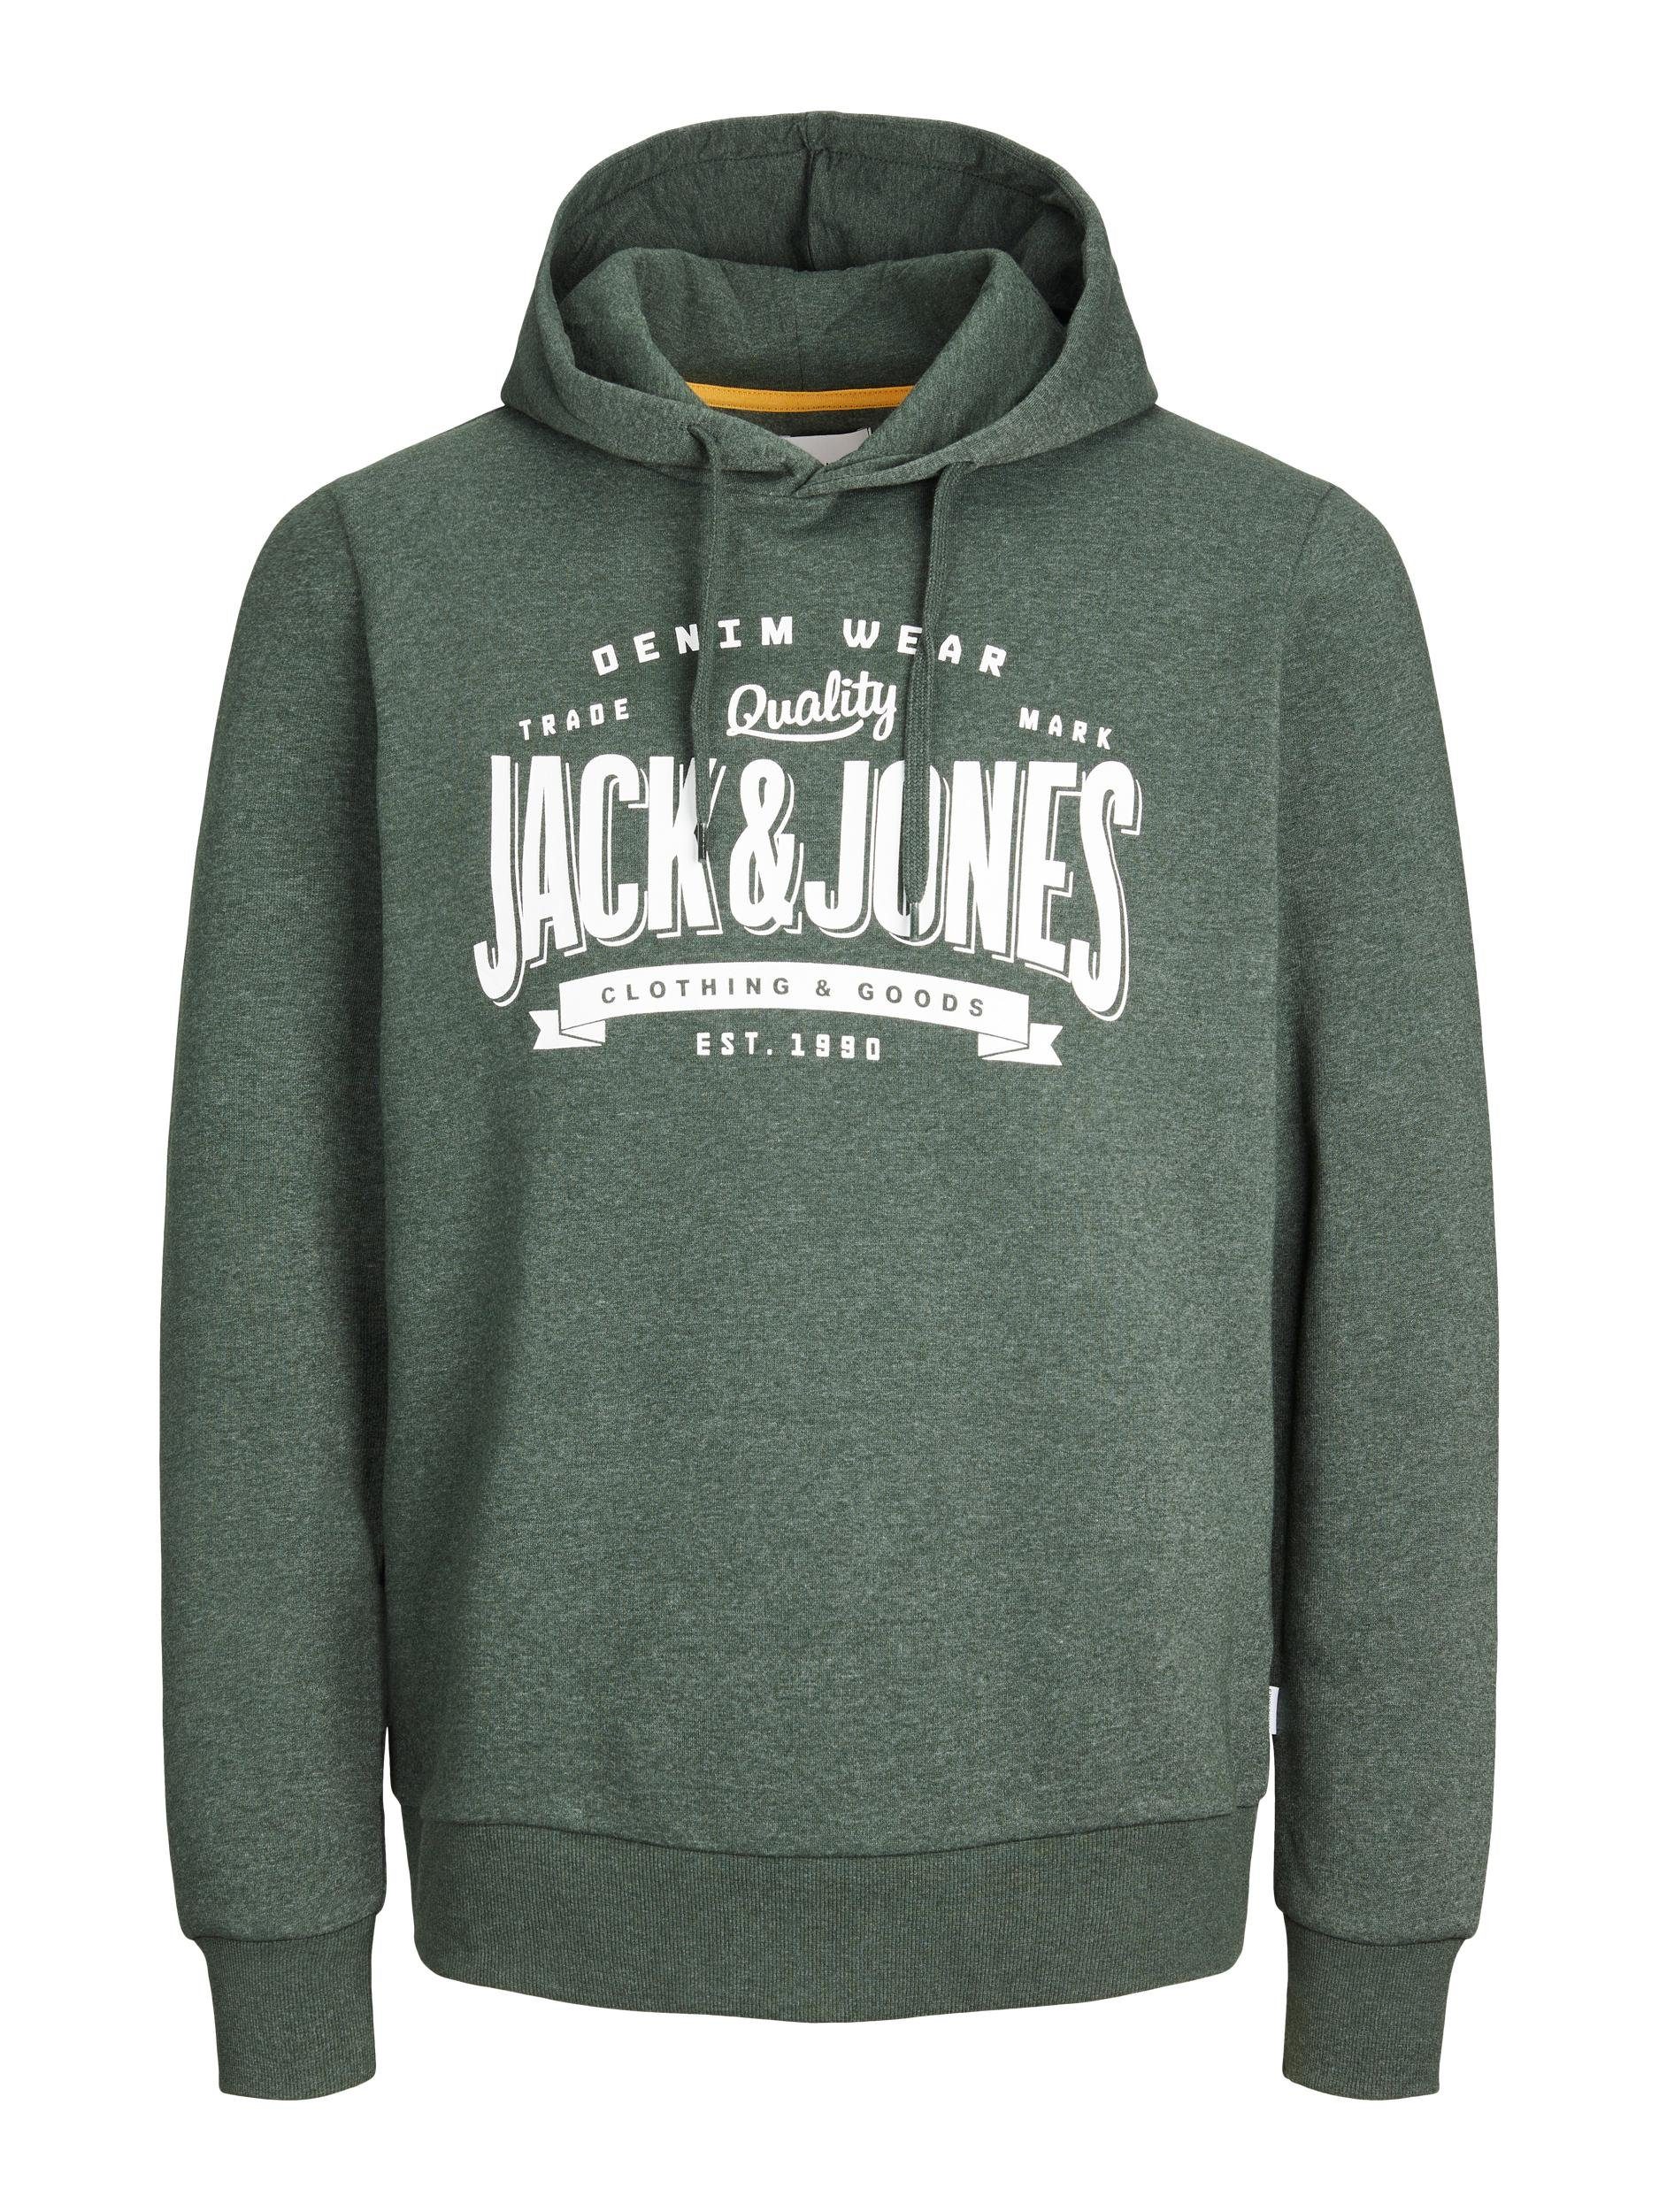 & Jack Jones Mountain View/M Sweatshirt